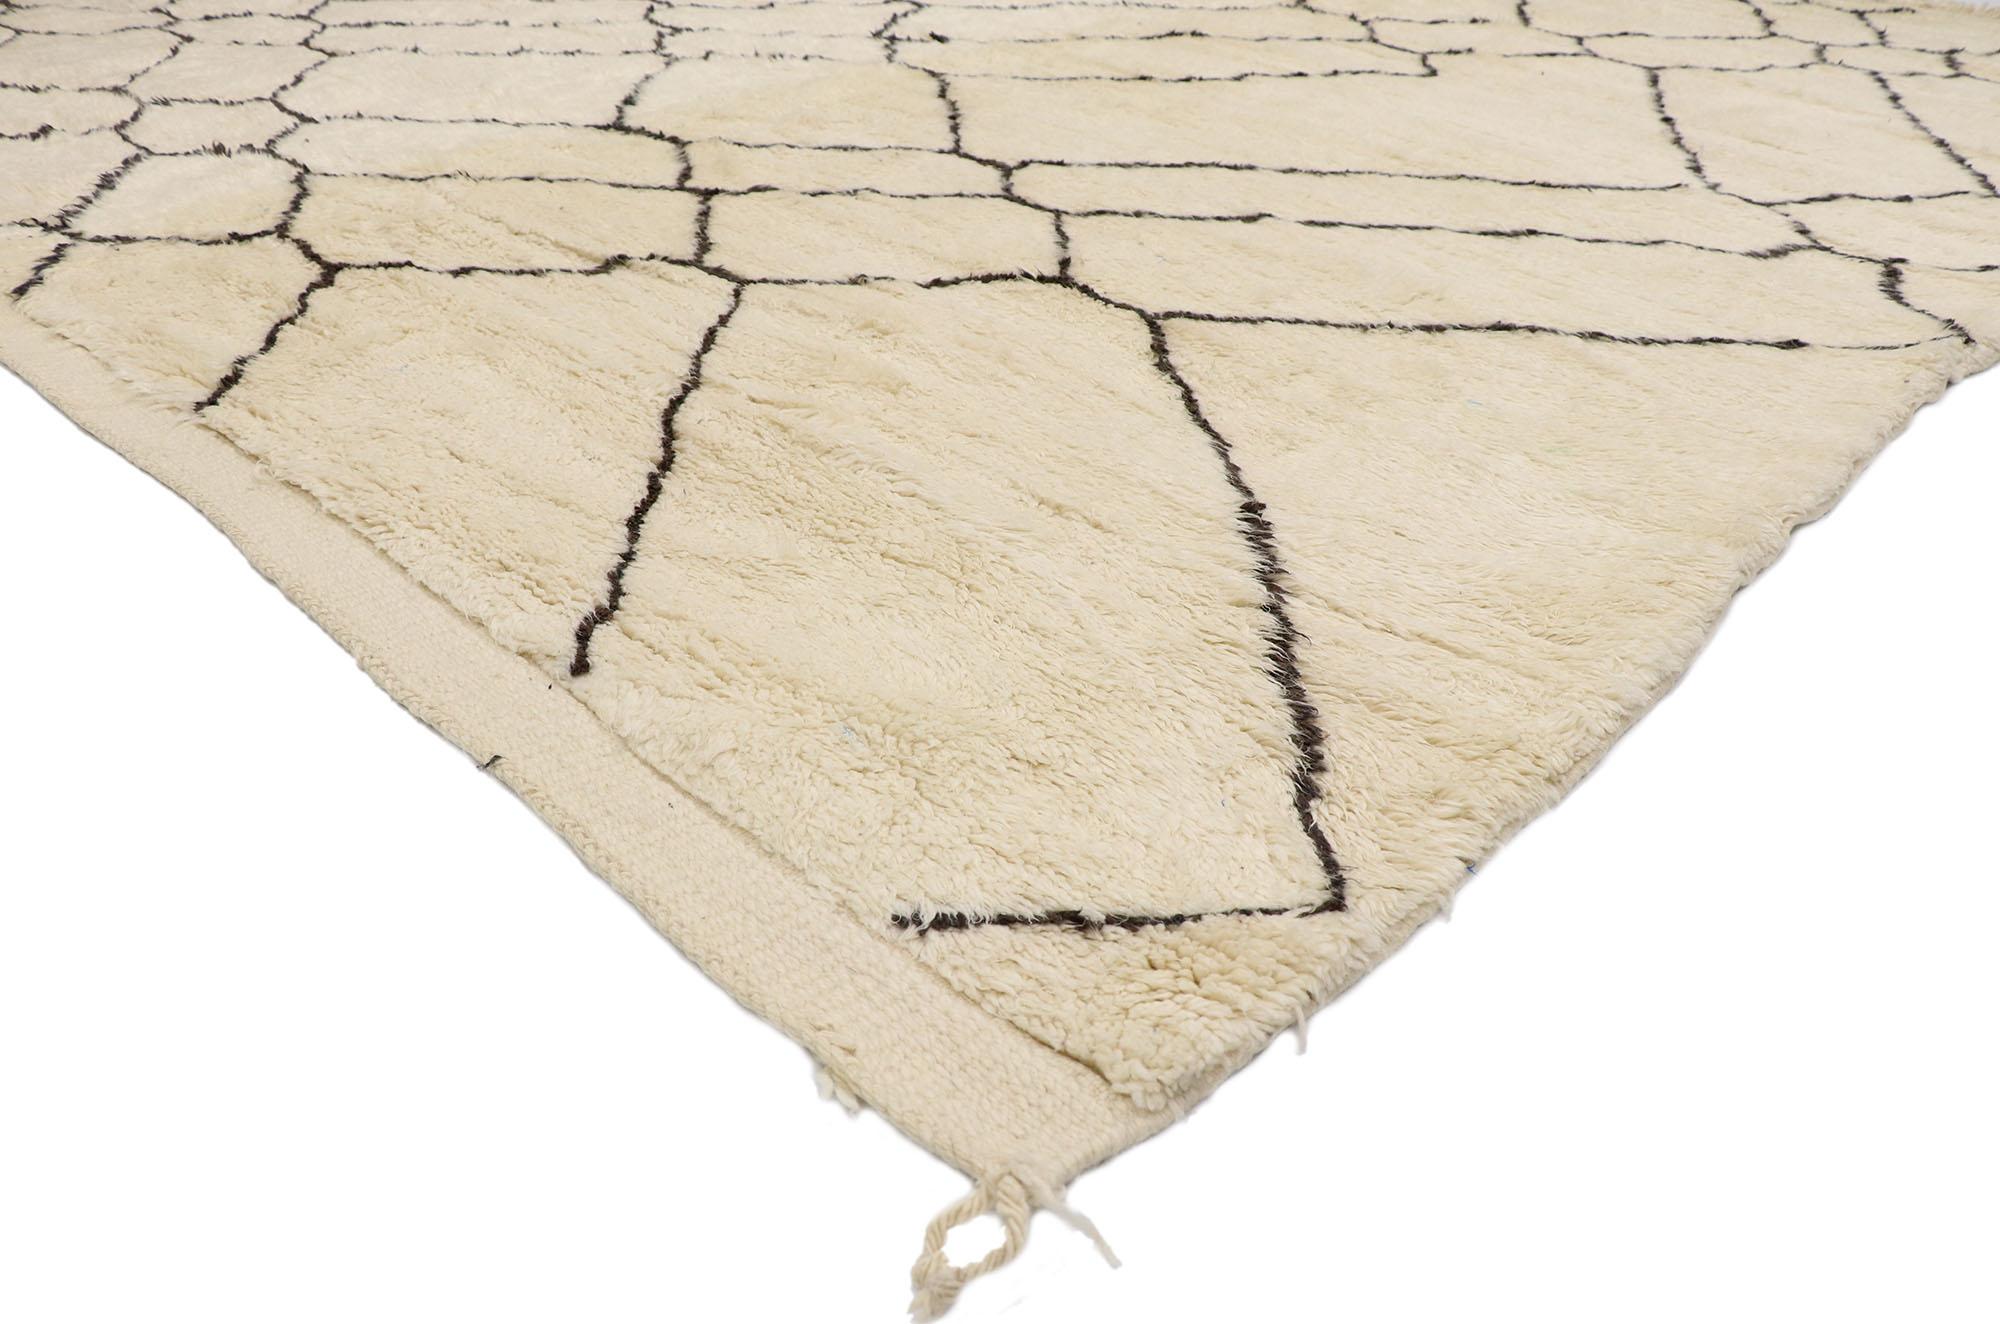 21097 Nouveau tapis berbère marocain contemporain au style minimaliste 10'03 x 11'09. Avec son asymétrie équilibrée, sa simplicité et ses poils pelucheux, ce tapis marocain contemporain en laine nouée à la main affiche toute l'intrigue du style